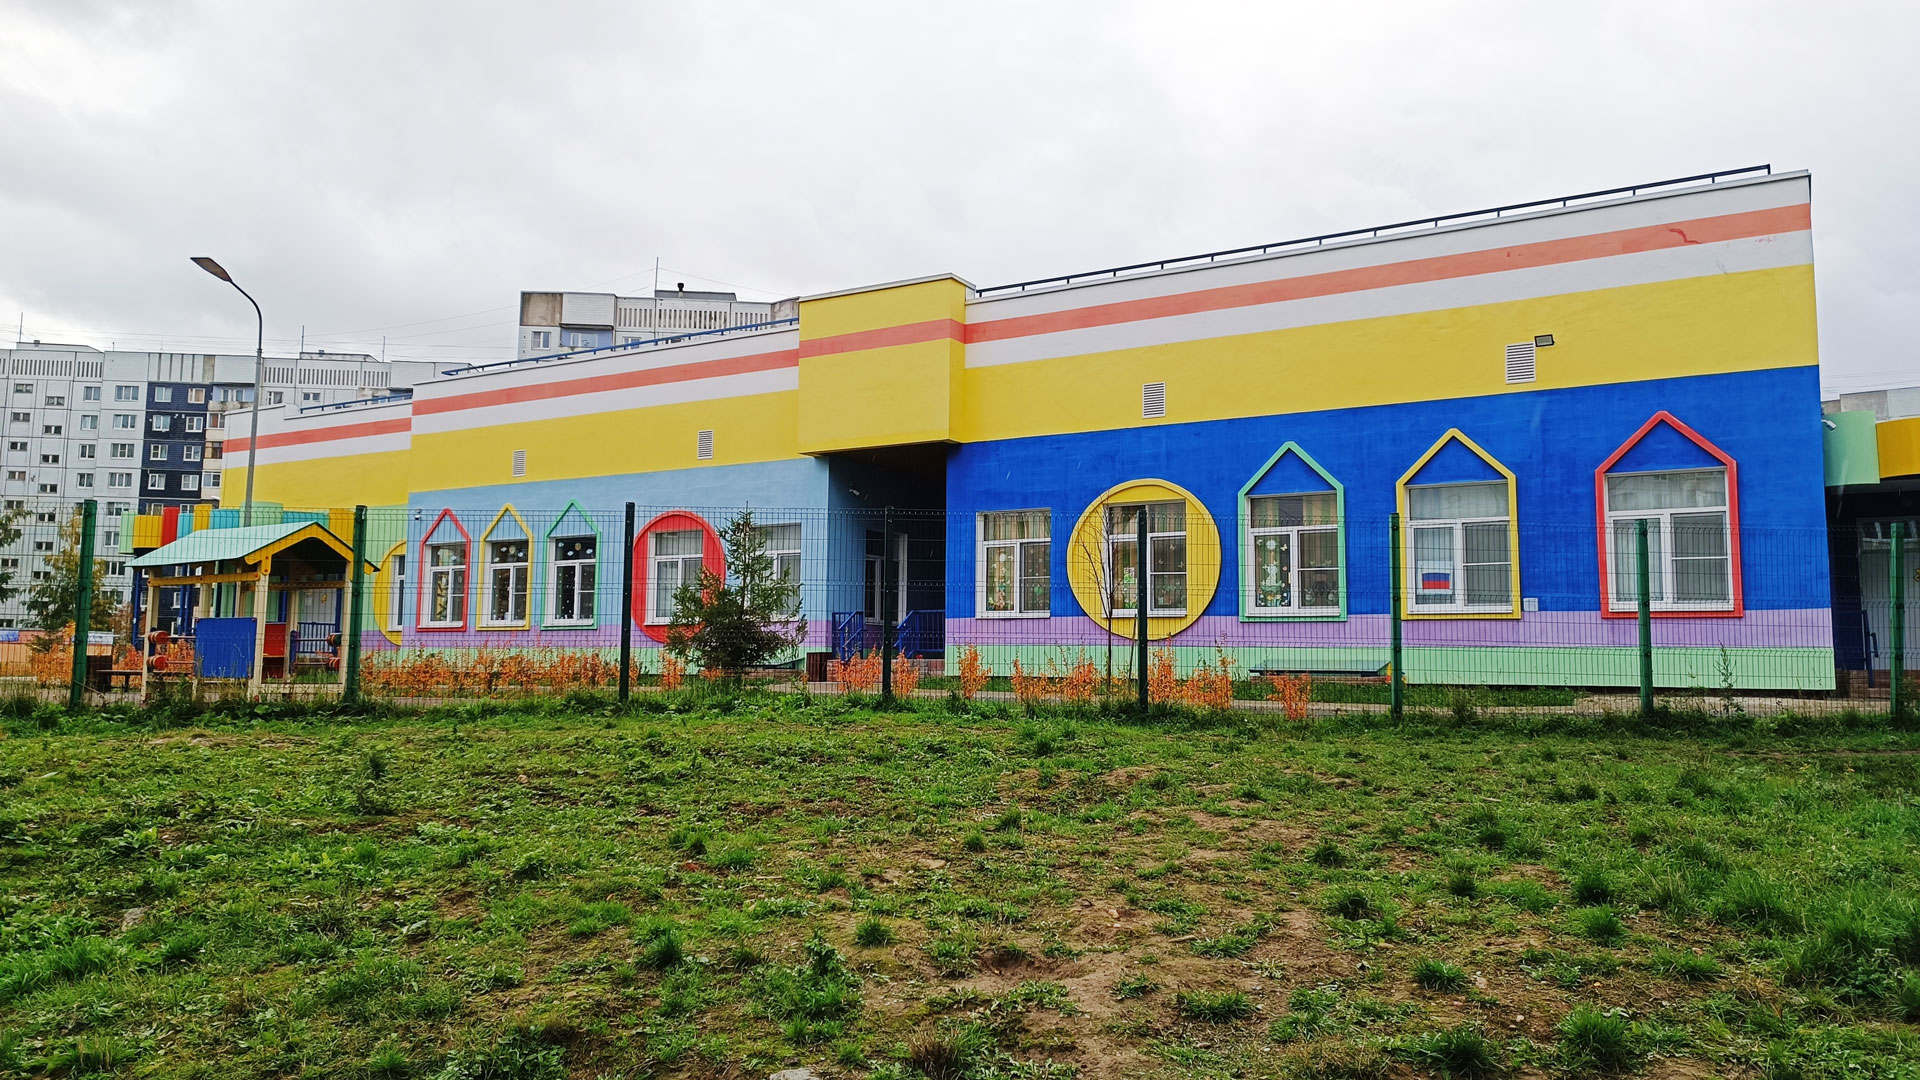 Детский сад 111 Ярославль: общий вид здания д/с, Ленинградский пр., 58а.